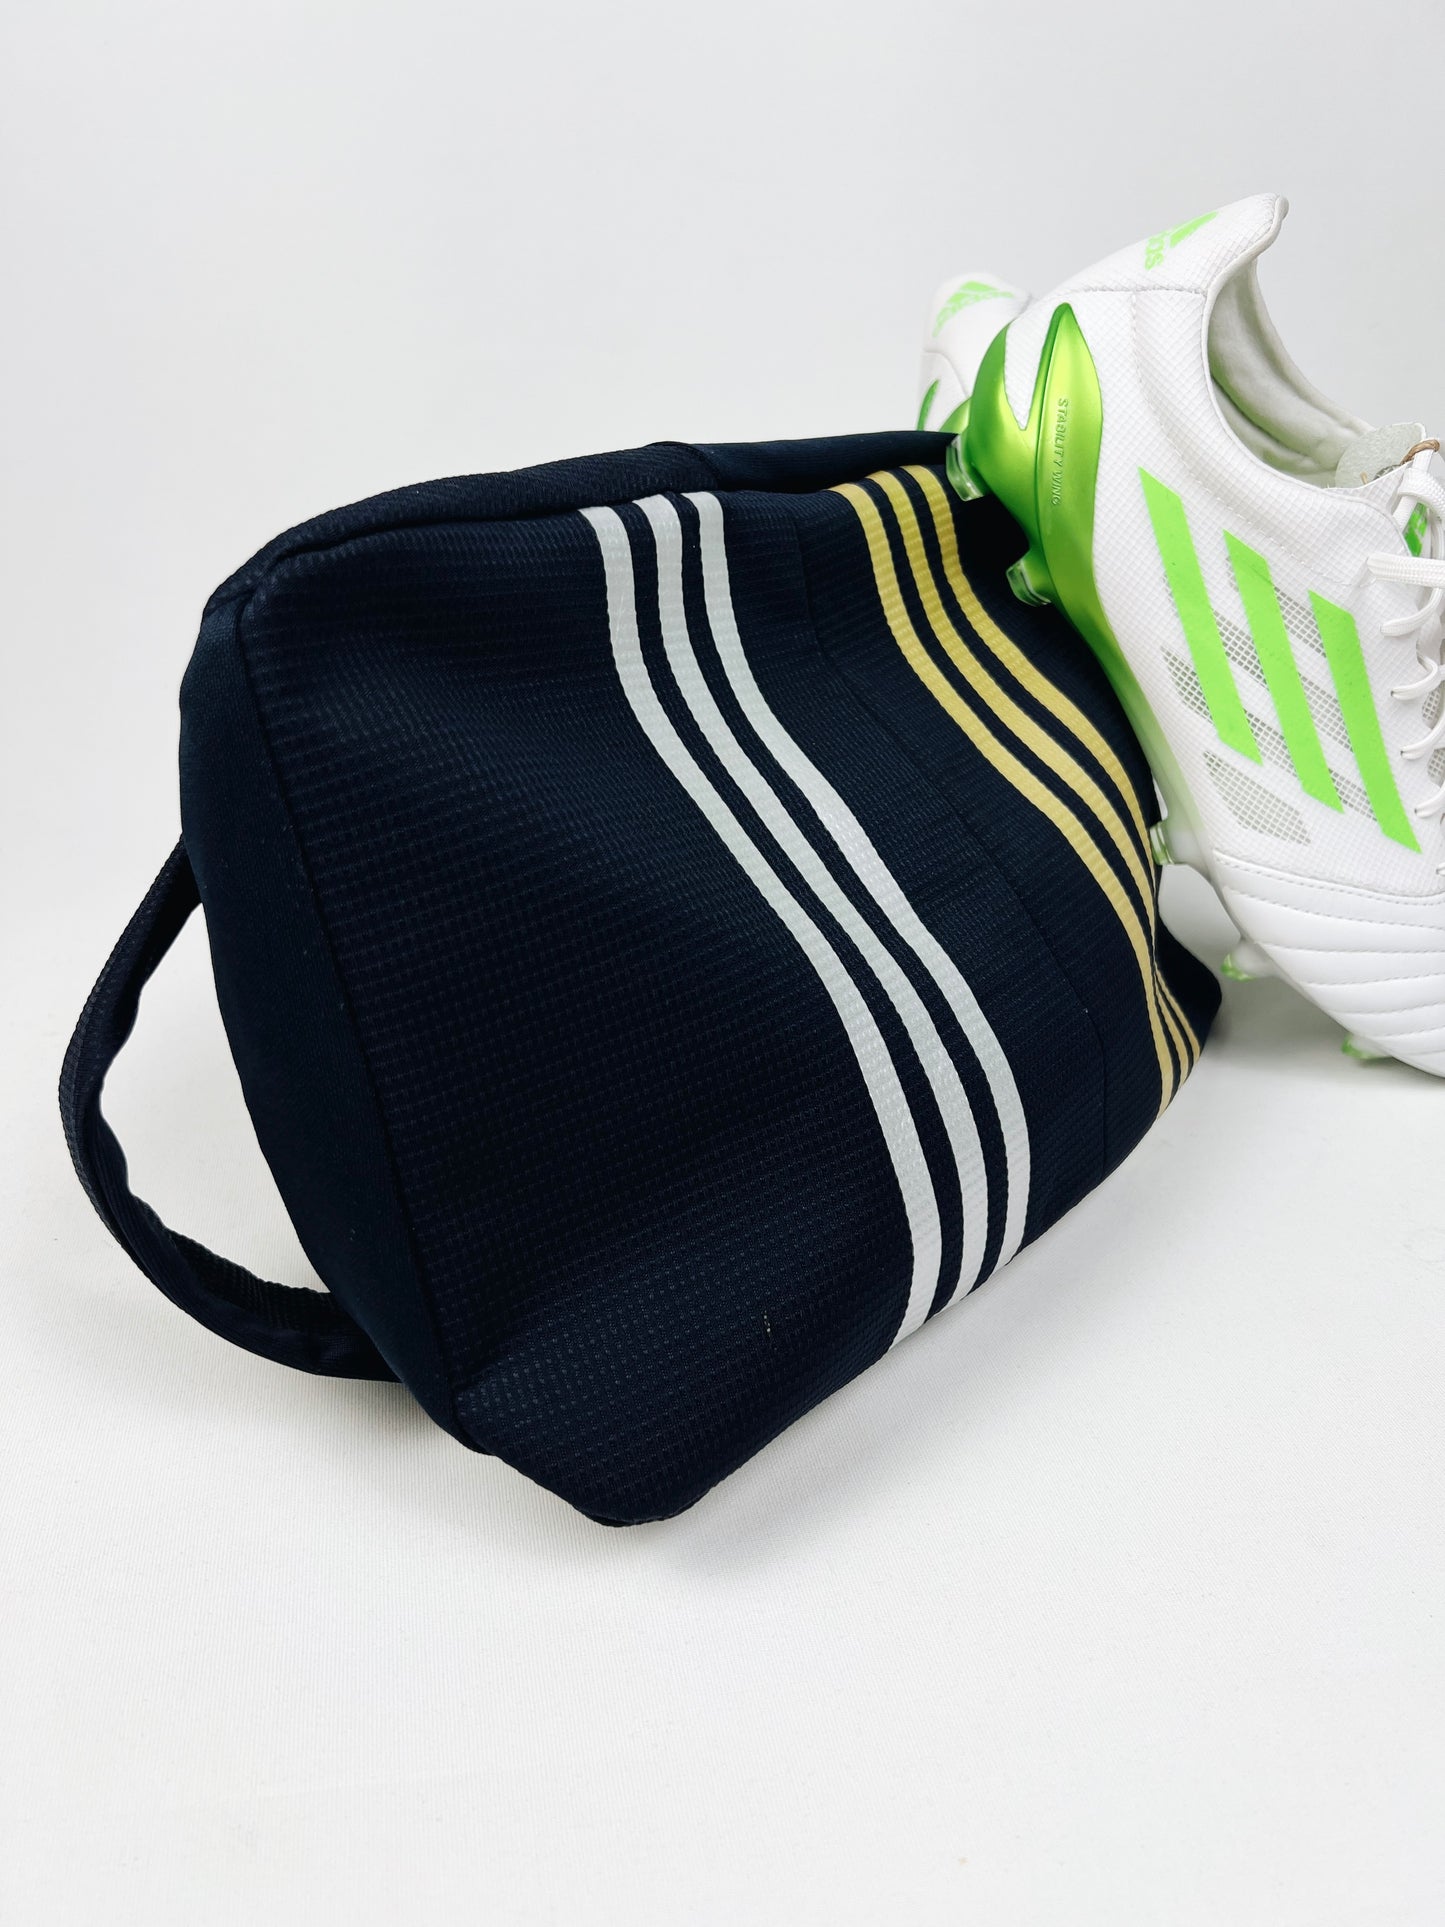 Leeds United Boot Bag